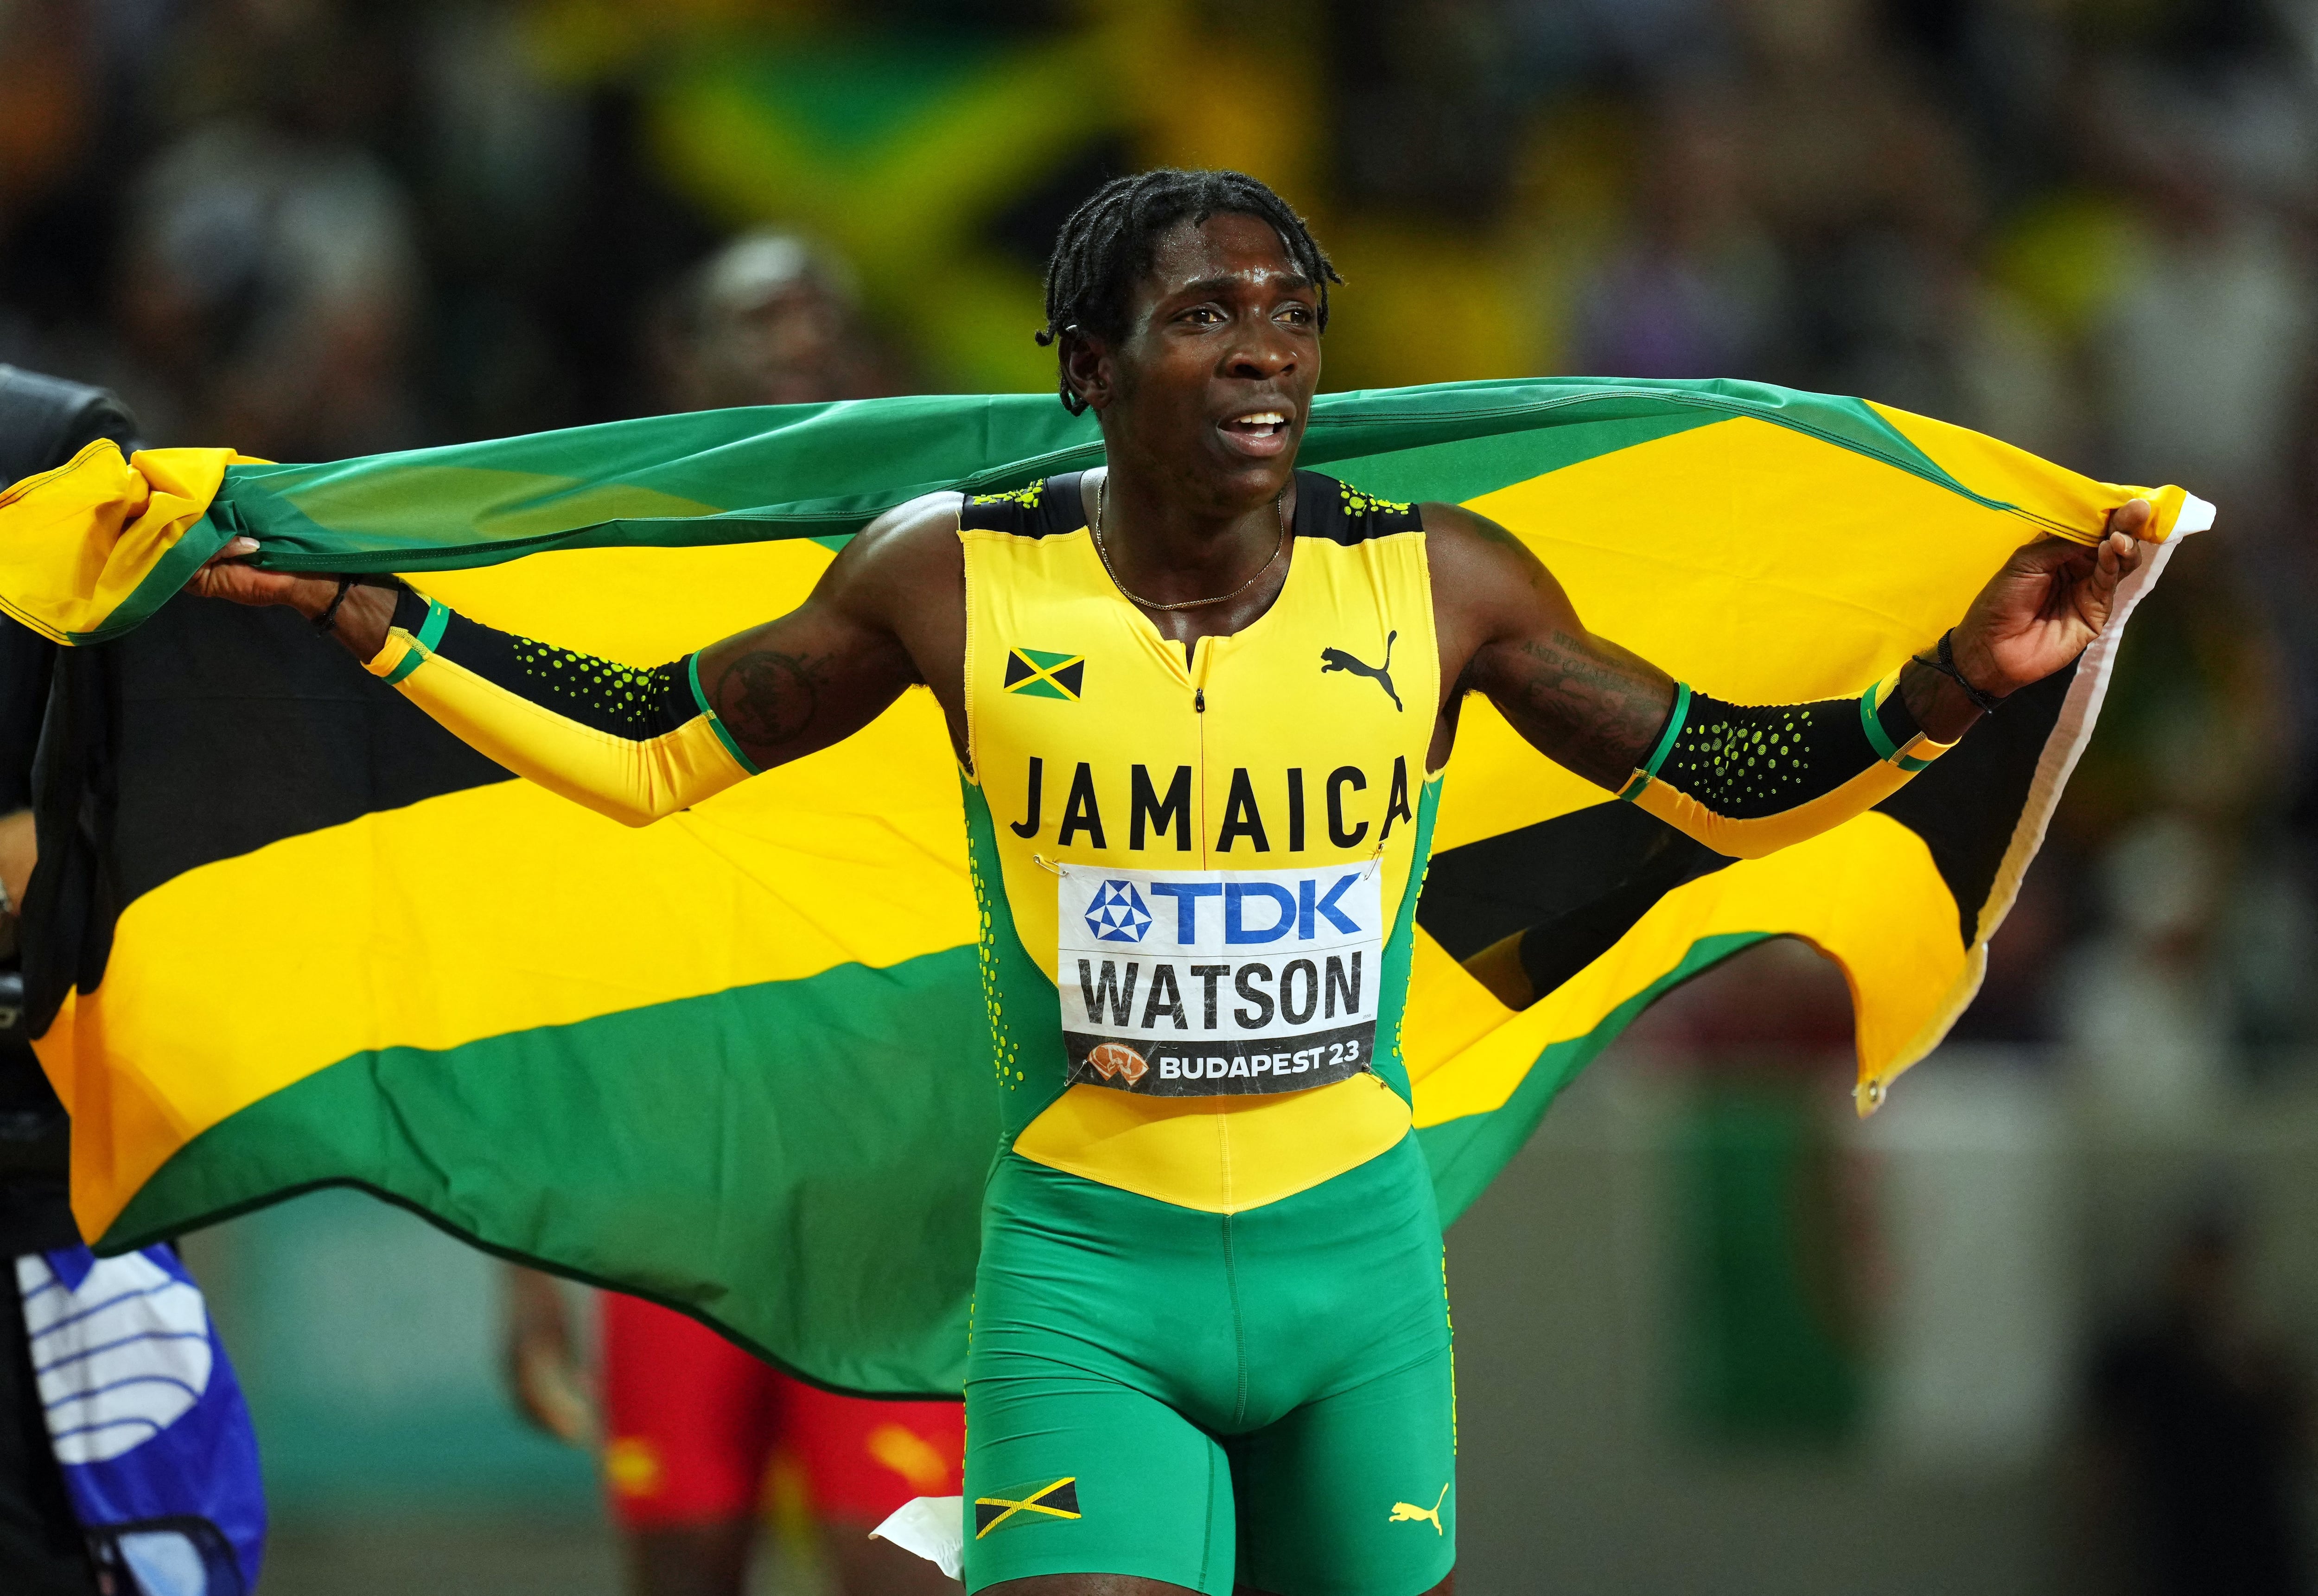 Antonio Watson, medallista de oro de Jamaica, celebra después de ganar la final final masculina 400m en el Campeonato Mundial de Atletismo Budapest, Hungría (REUTERS/Aleksandra Szmigiel) 